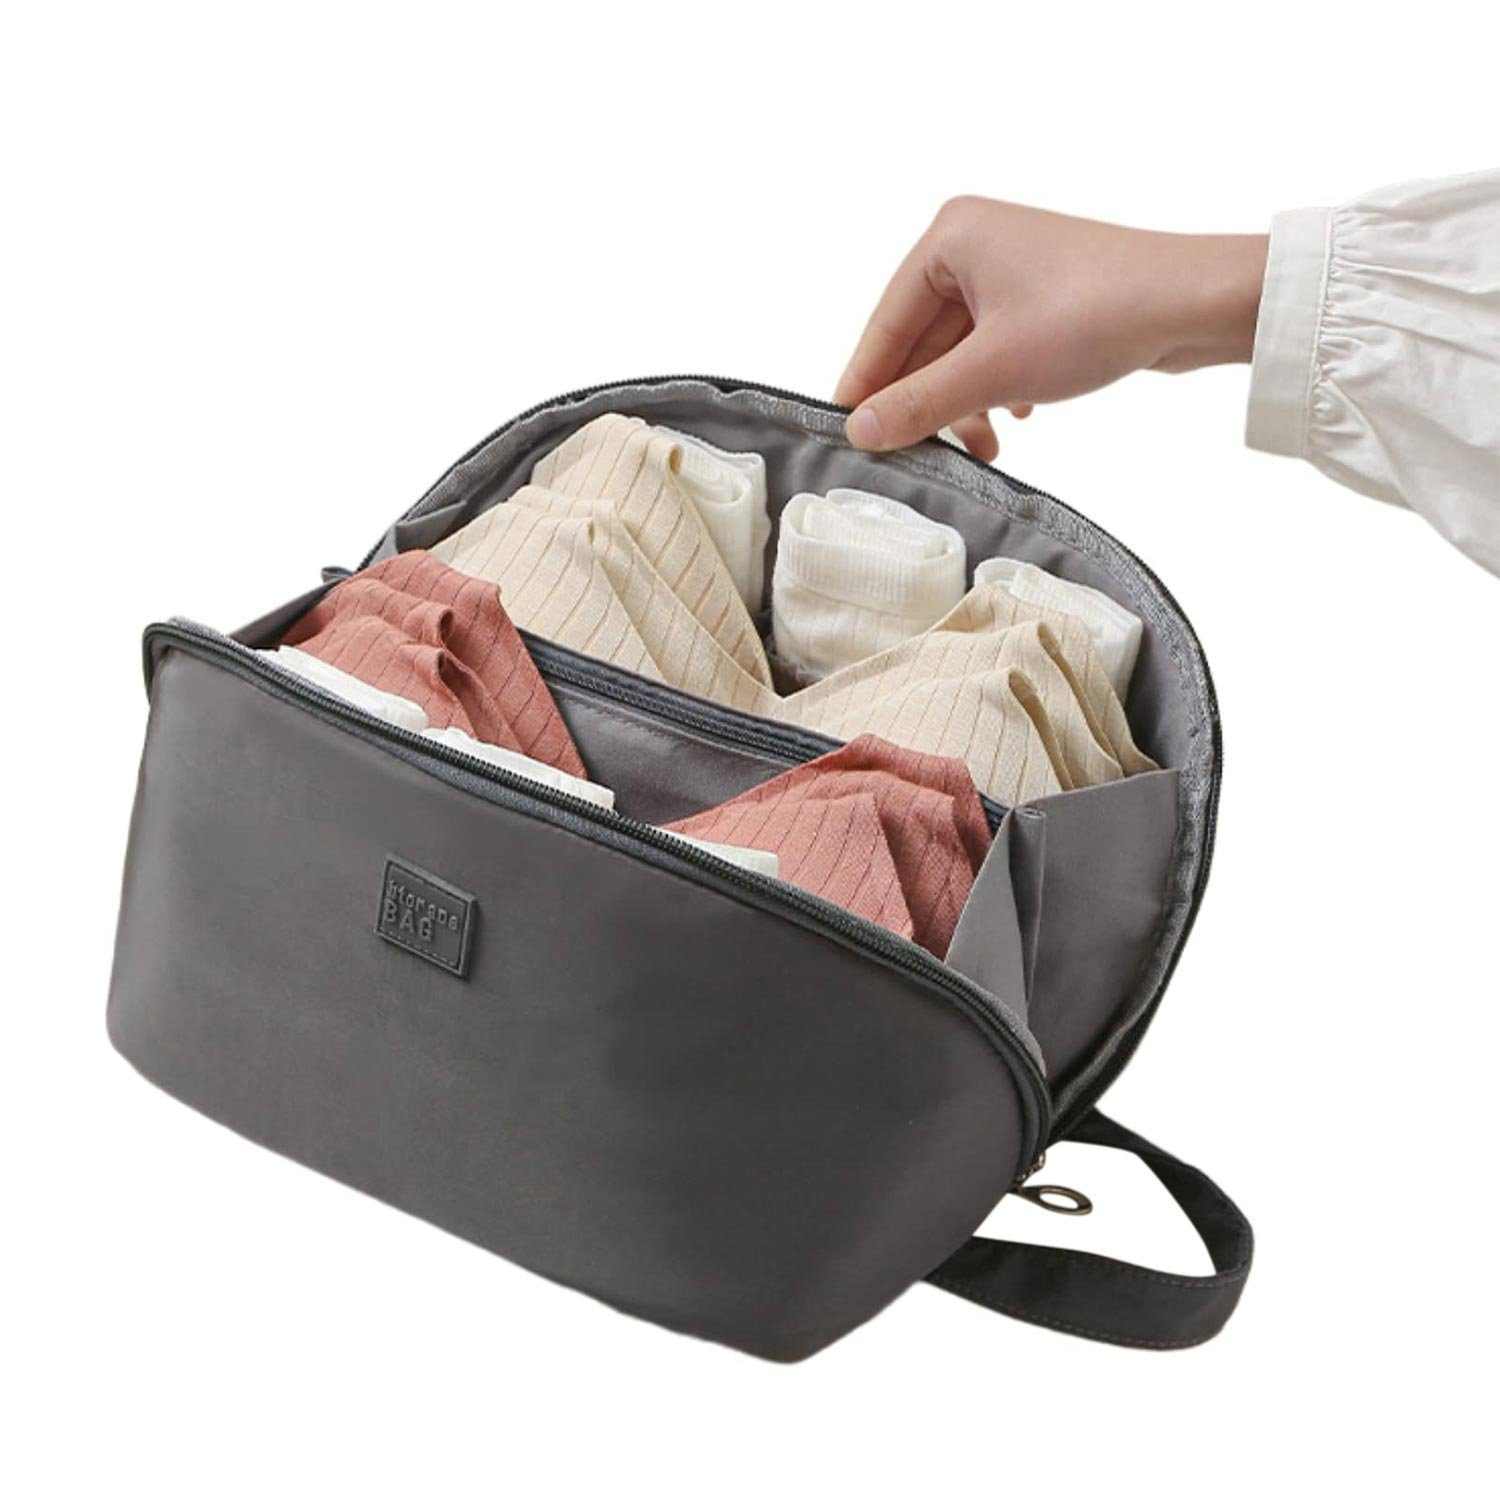 MAGICSHE Reisetasche Multifunktionale Aufbewahrungstasche für Unterwäsche (25*13*13cm), Organizer grau